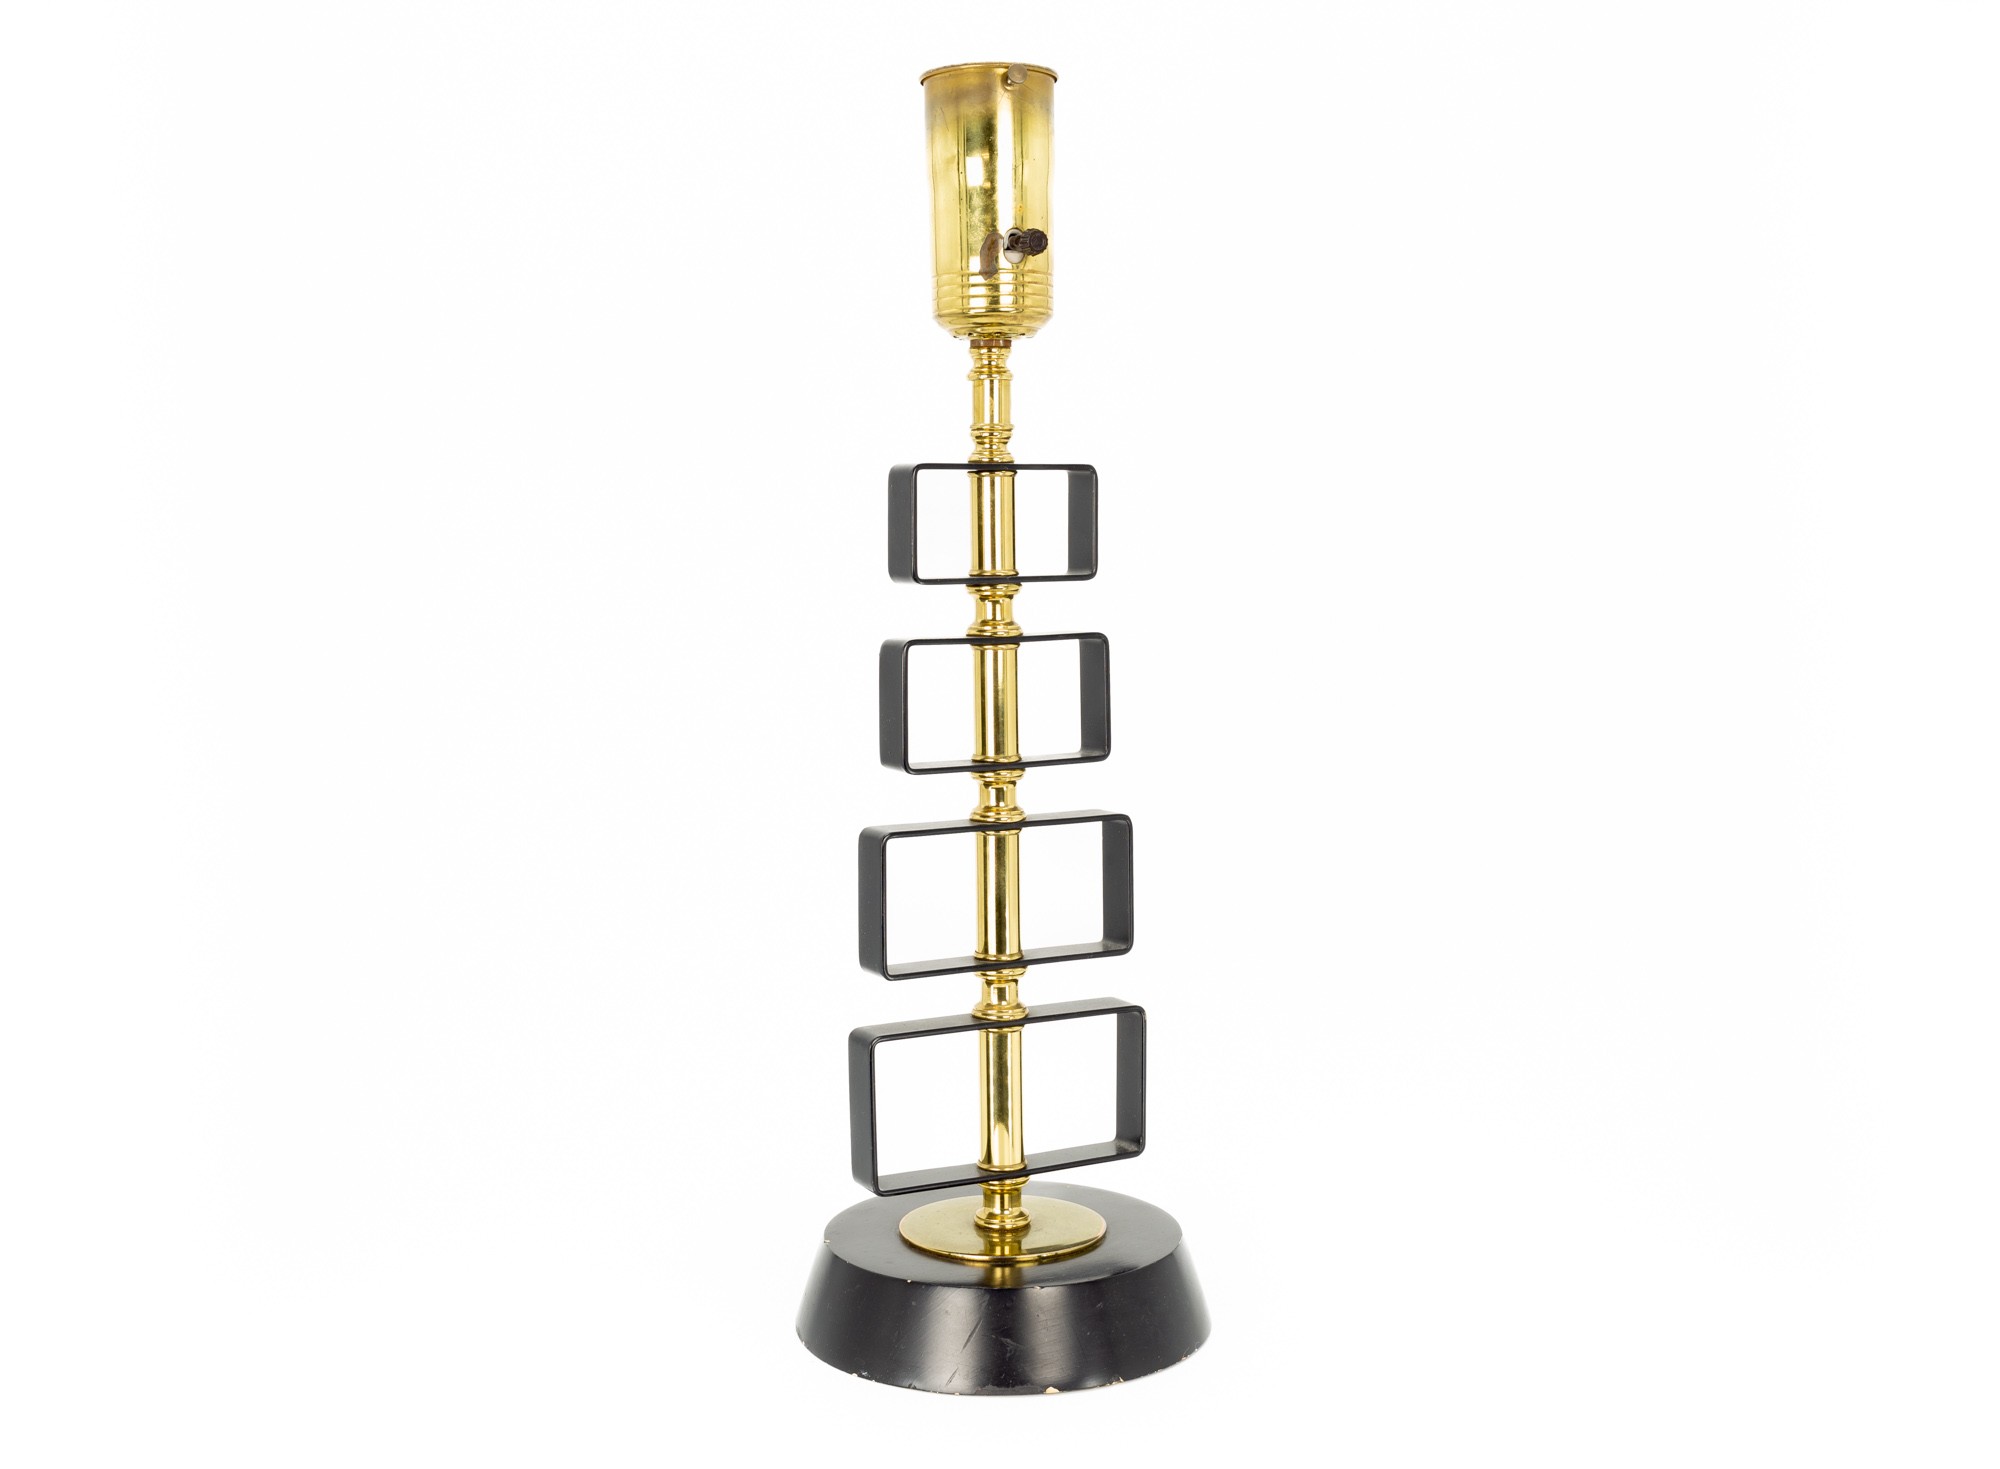 Mid Century Brass Table Lamp